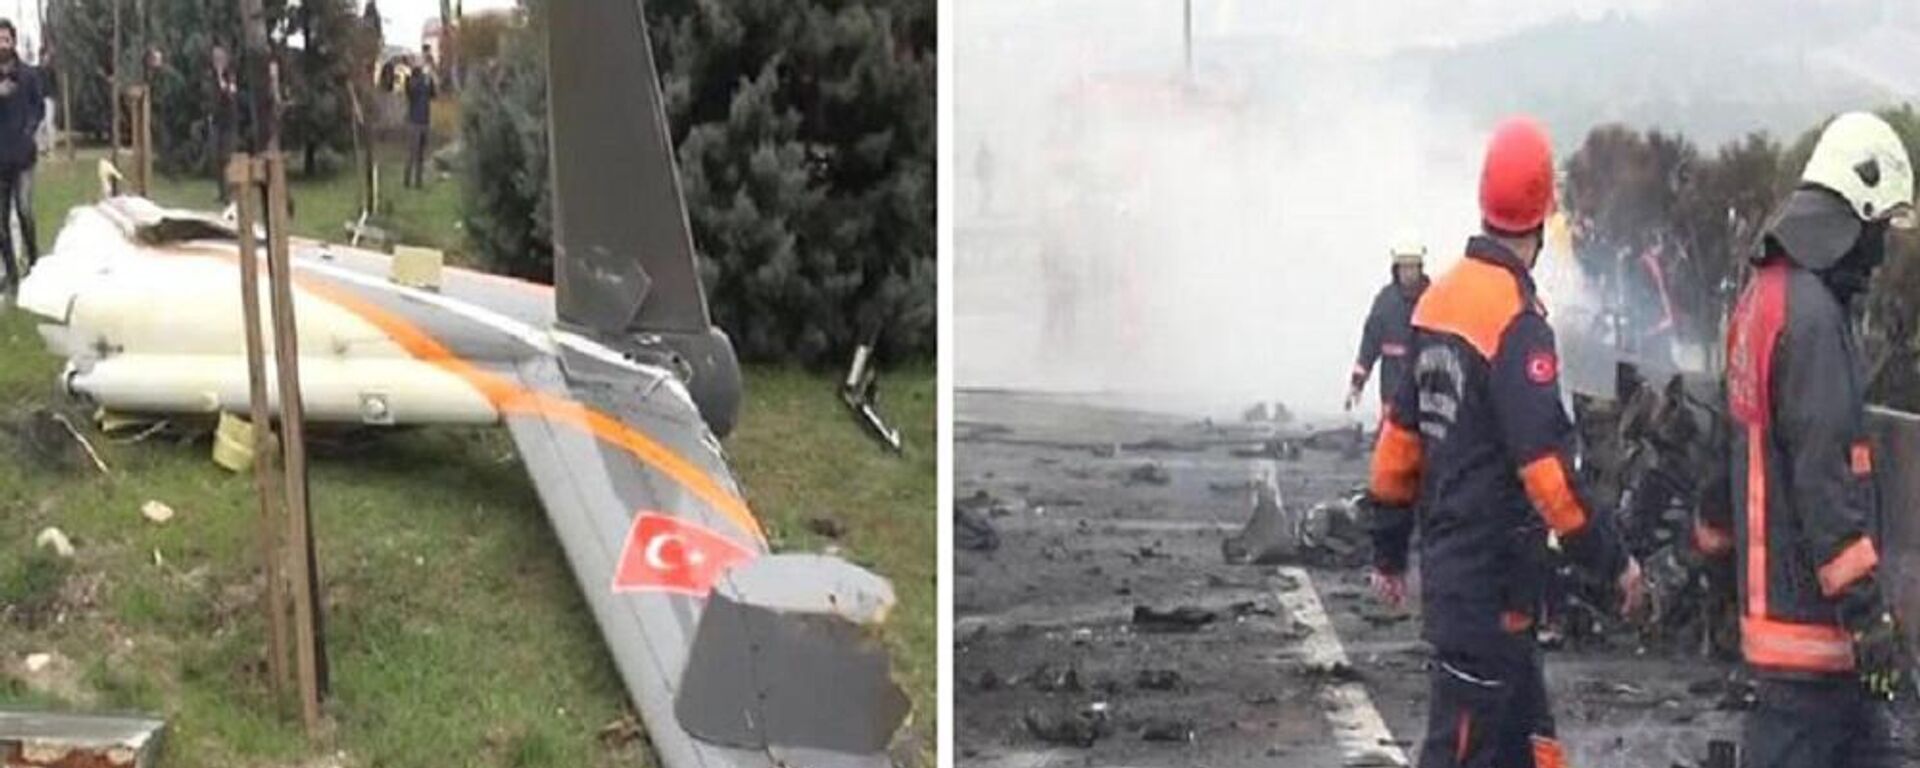 Büyükçekmece'de 7 kişinin öldüğü helikopter kazasında TV kulesi kusurlu bulundu - Sputnik Türkiye, 1920, 30.06.2022